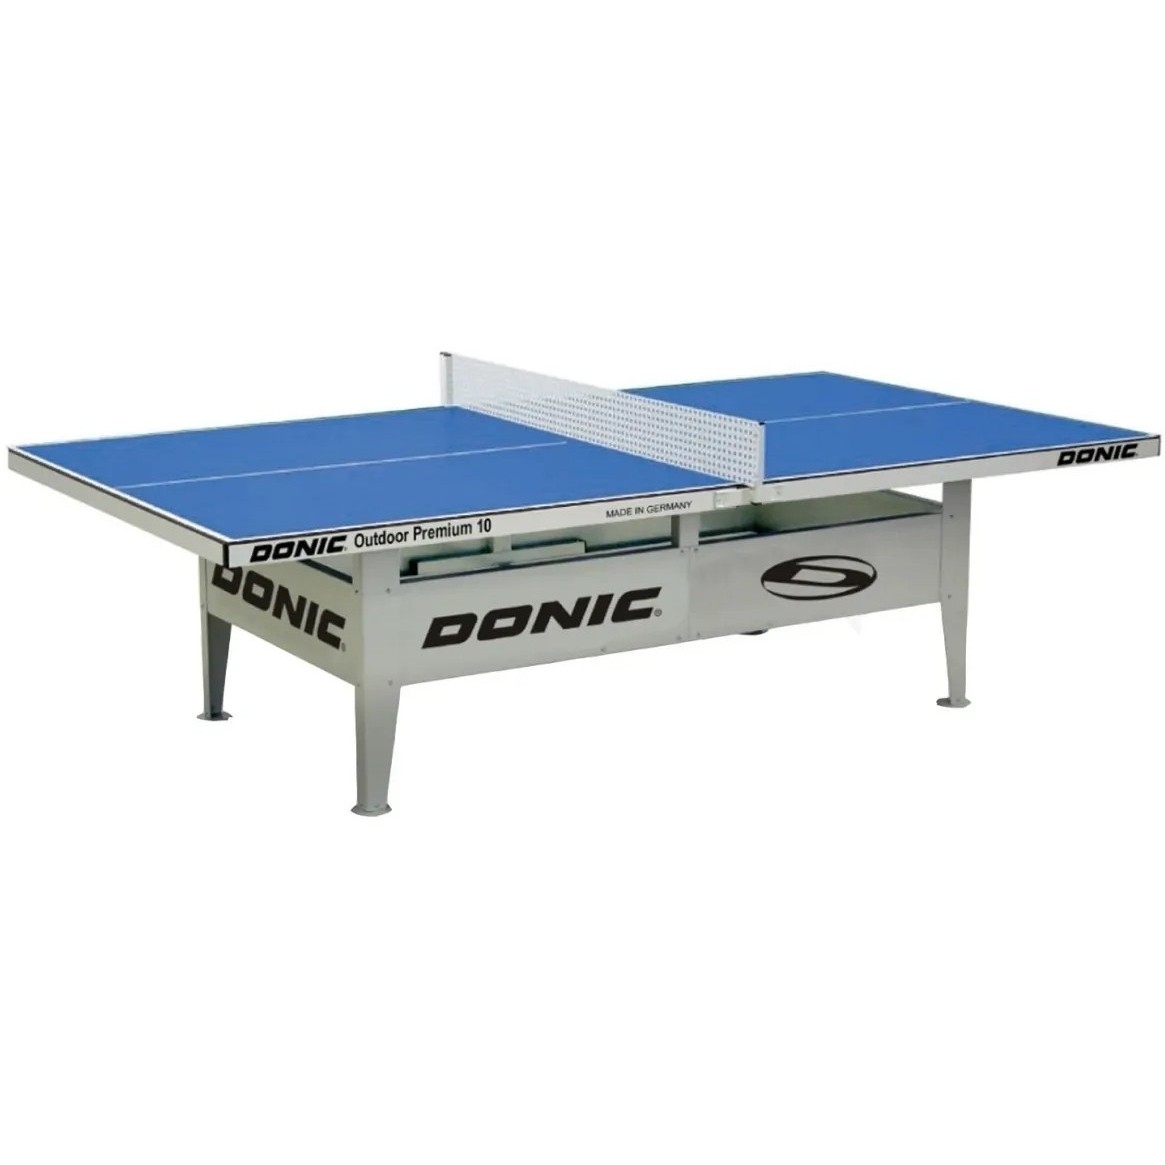 Фото Антивандальный теннисный стол Donic Outdoor Premium 10 мм - синий